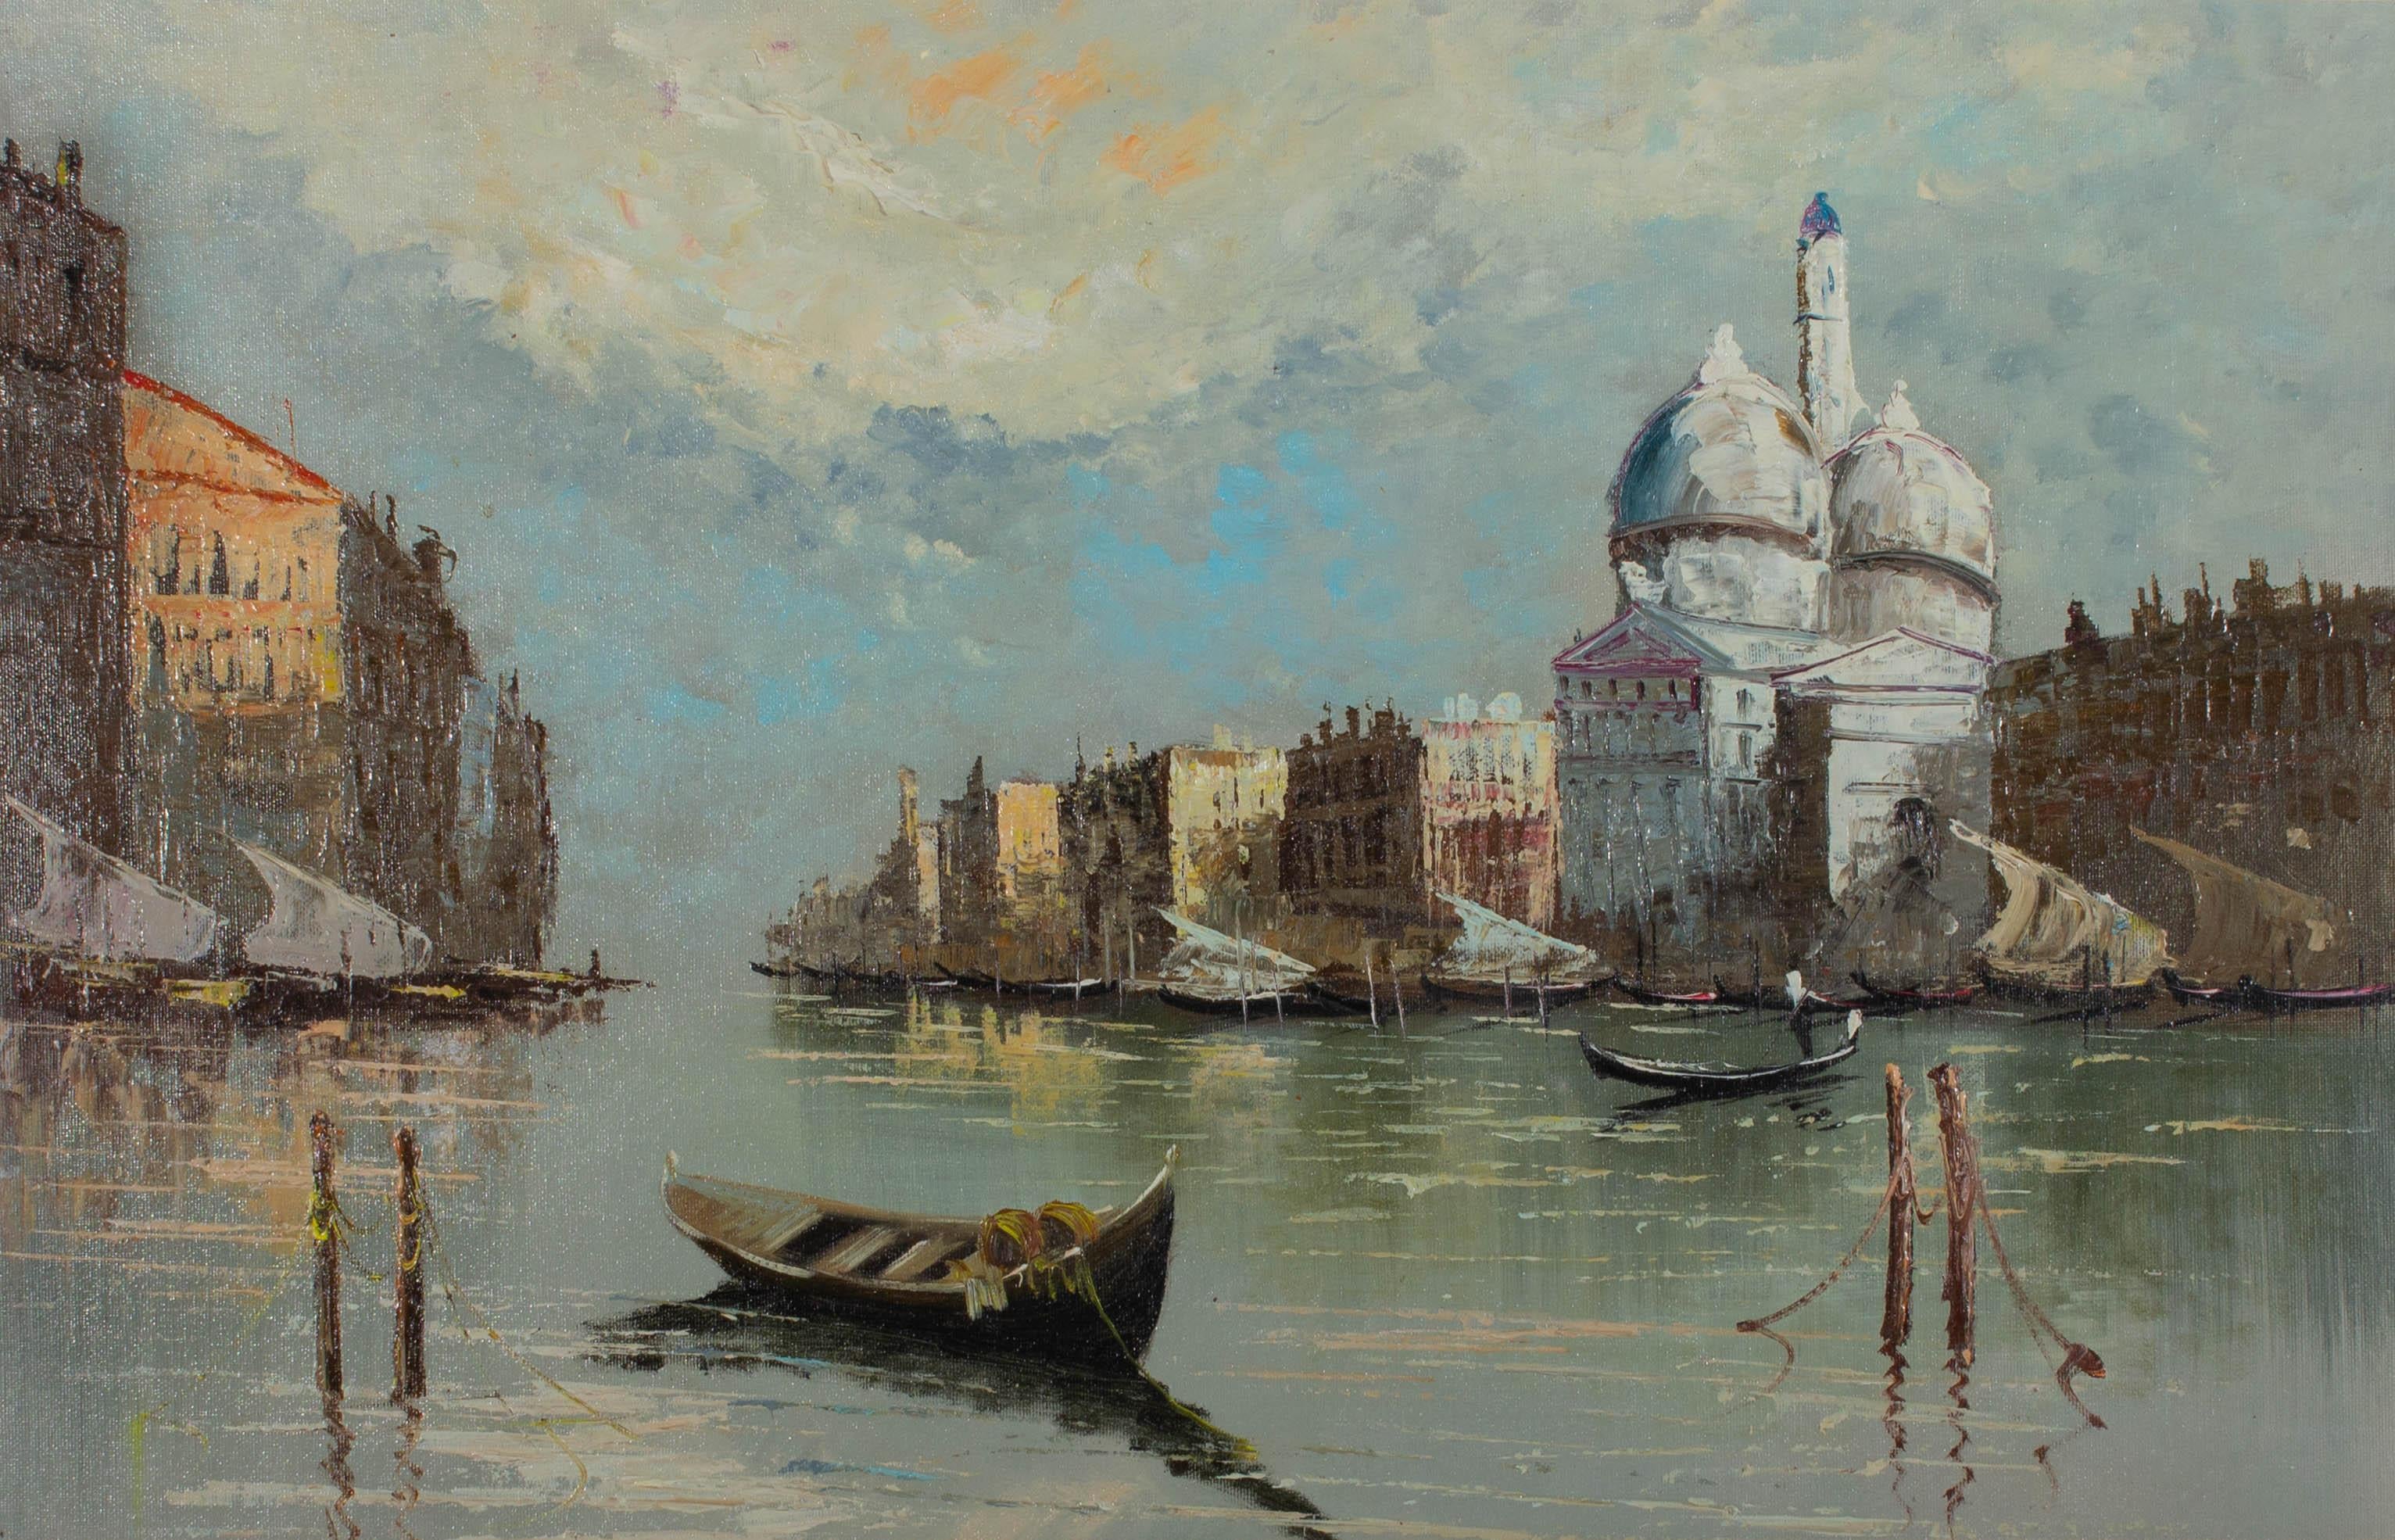 Une peinture à l'huile contemporaine, représentant une vue de Venise avec des gondoles. Non signée. Bien présenté dans un cadre vieilli et doré. Sur panneau de toile.
